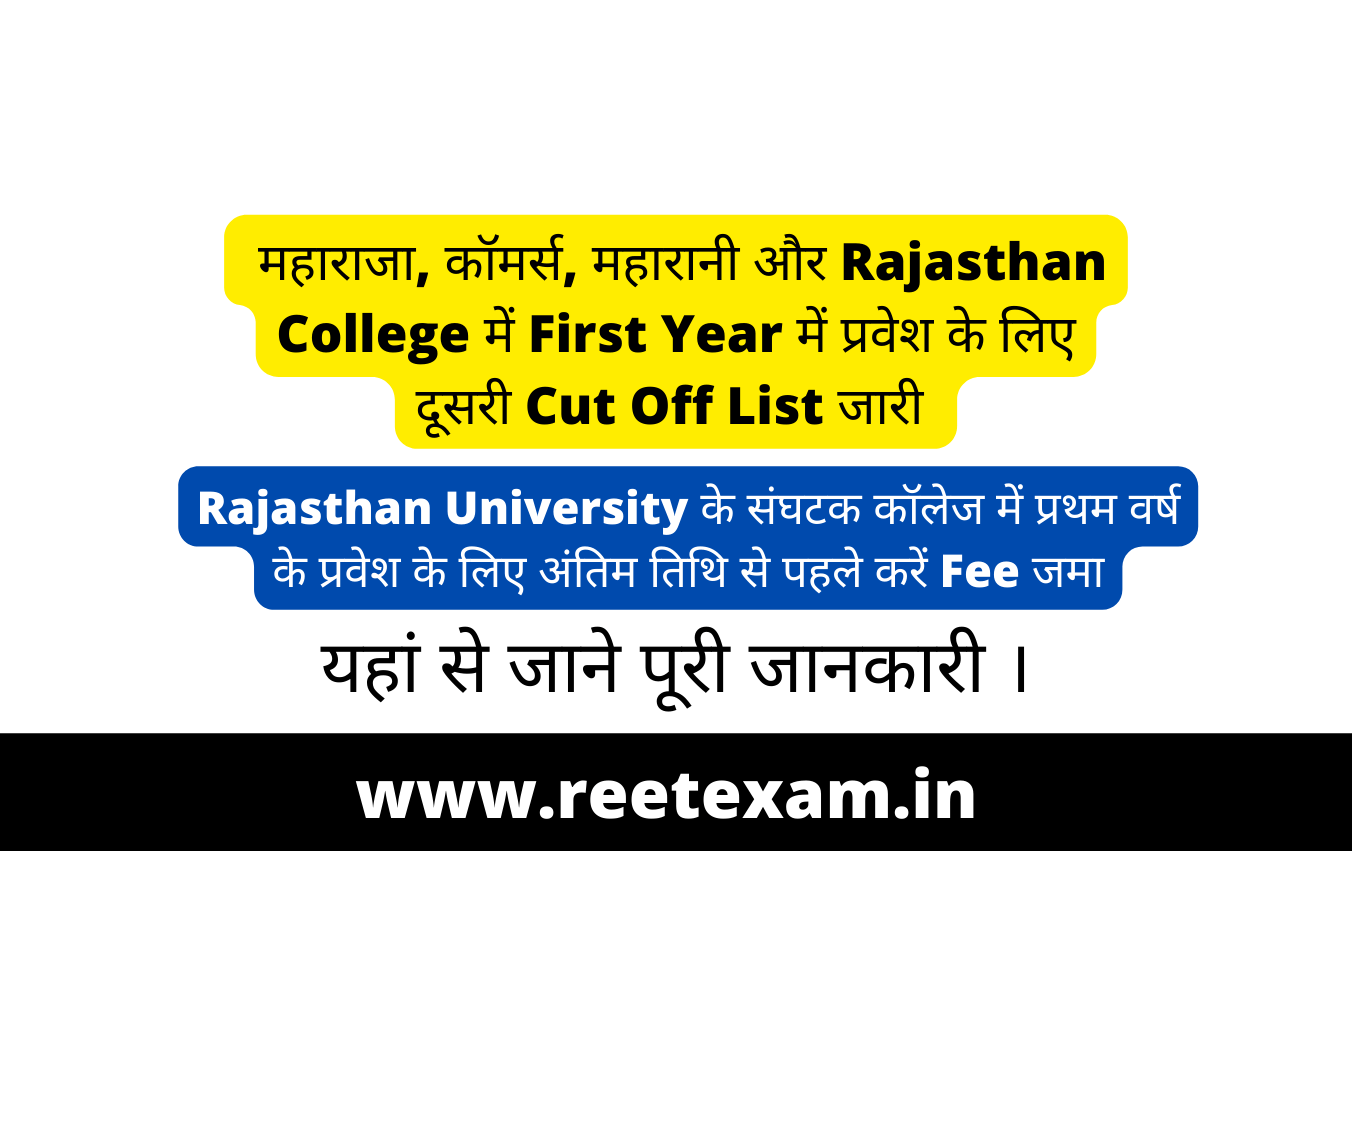 Rajasthan University के संघटक कॉलेज में प्रथम वर्ष के प्रवेश के लिए अंतिम तिथि से पहले करें Fee जमा- यहां से जाने पूरी जानकारी ।